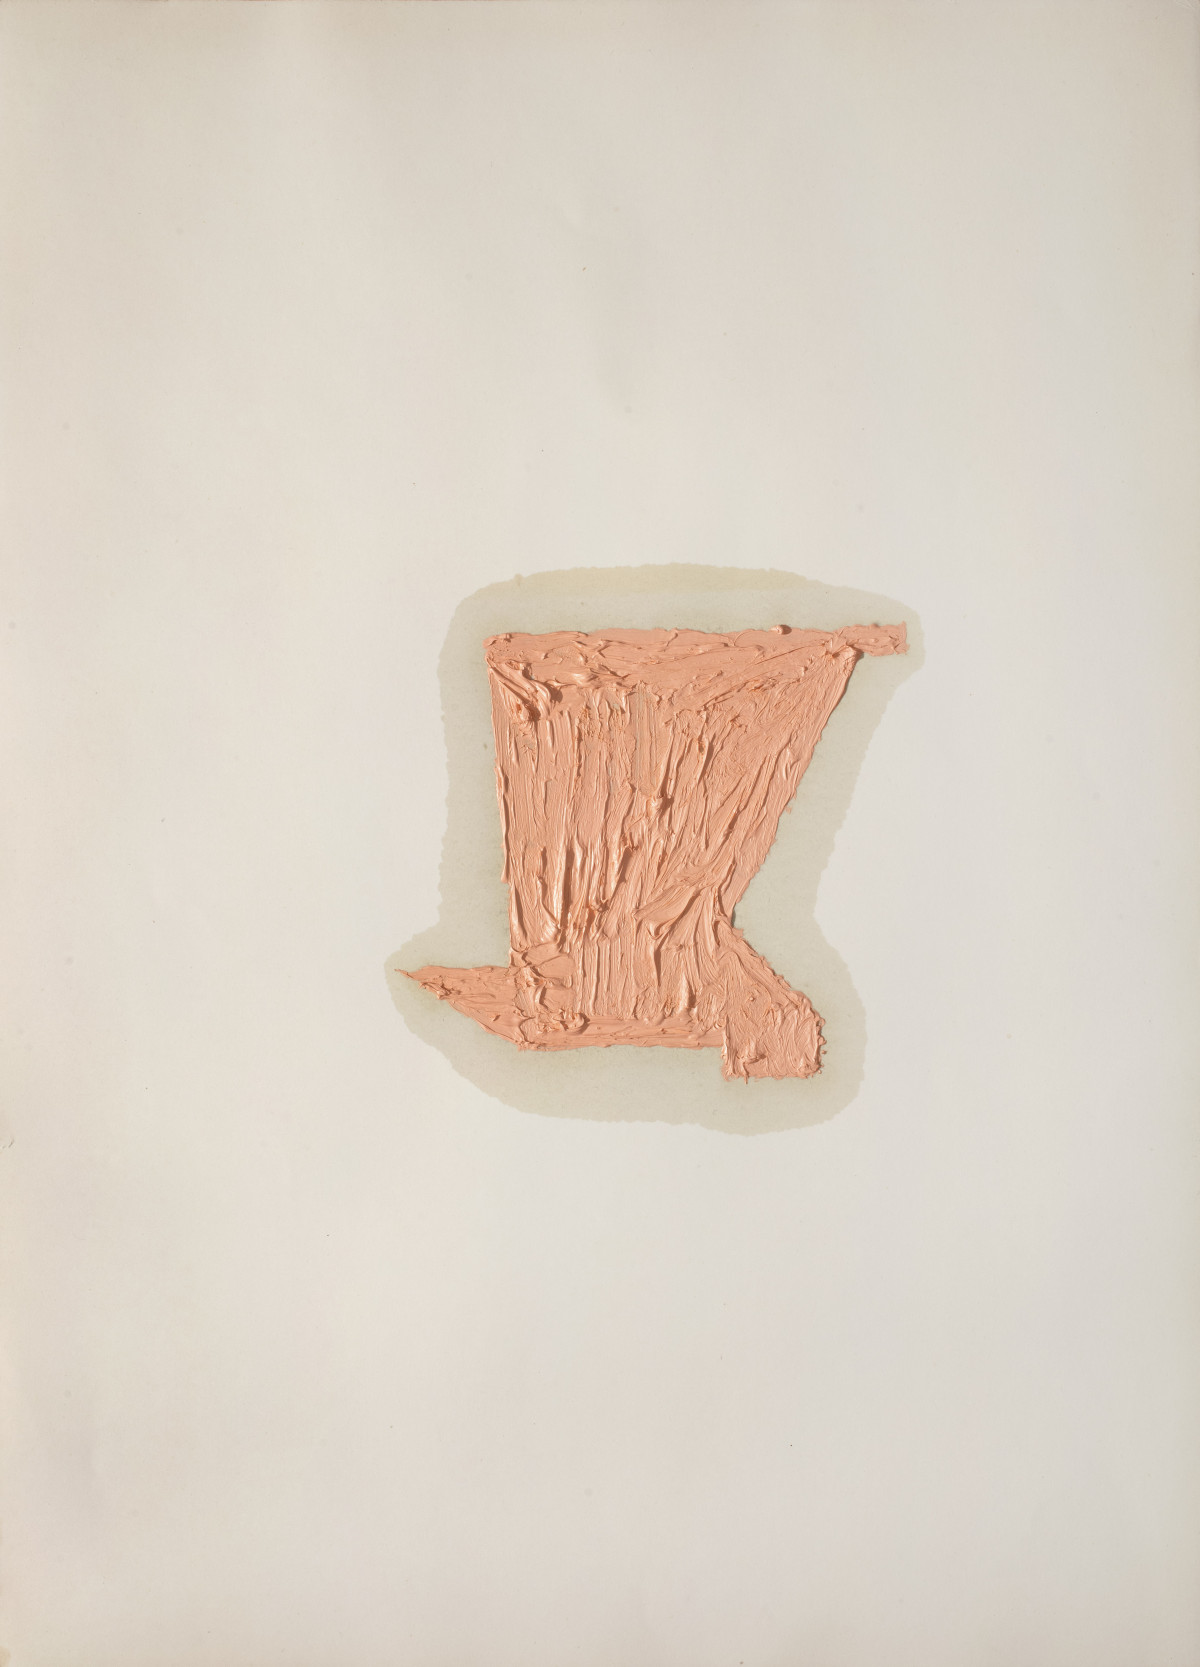 Alberto Garutti, ‘Pittura rosa tra piccoli oggetti’, 1995-2009, oil on cardboard